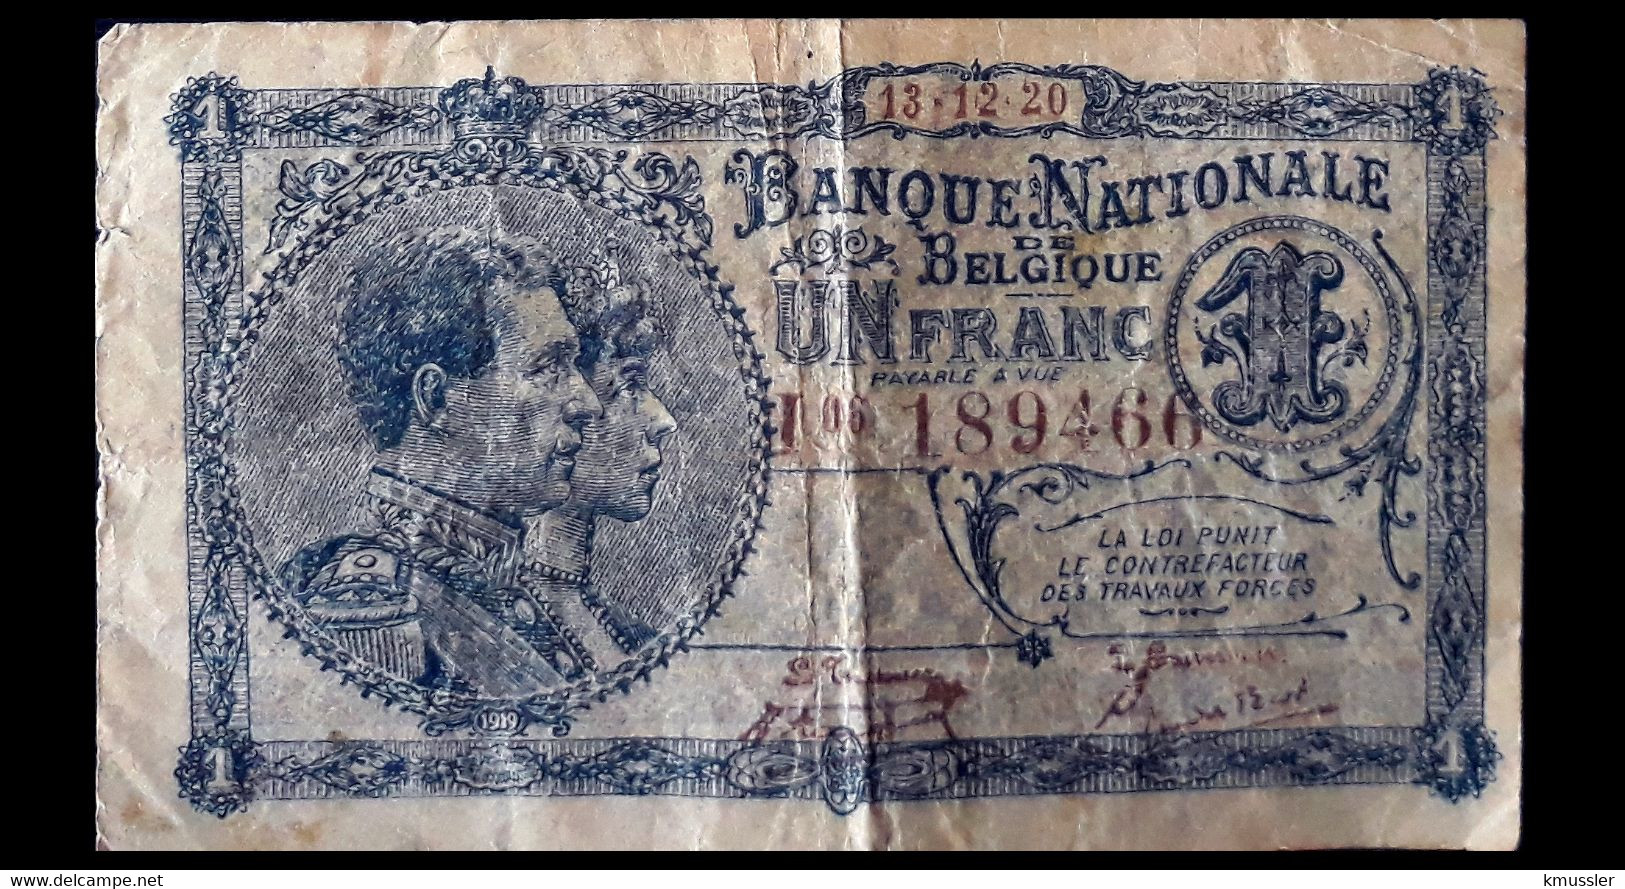 # # # Seltene Banknote Belgien (Belgium) 1 Francs 1920 # # # - 1 Franco